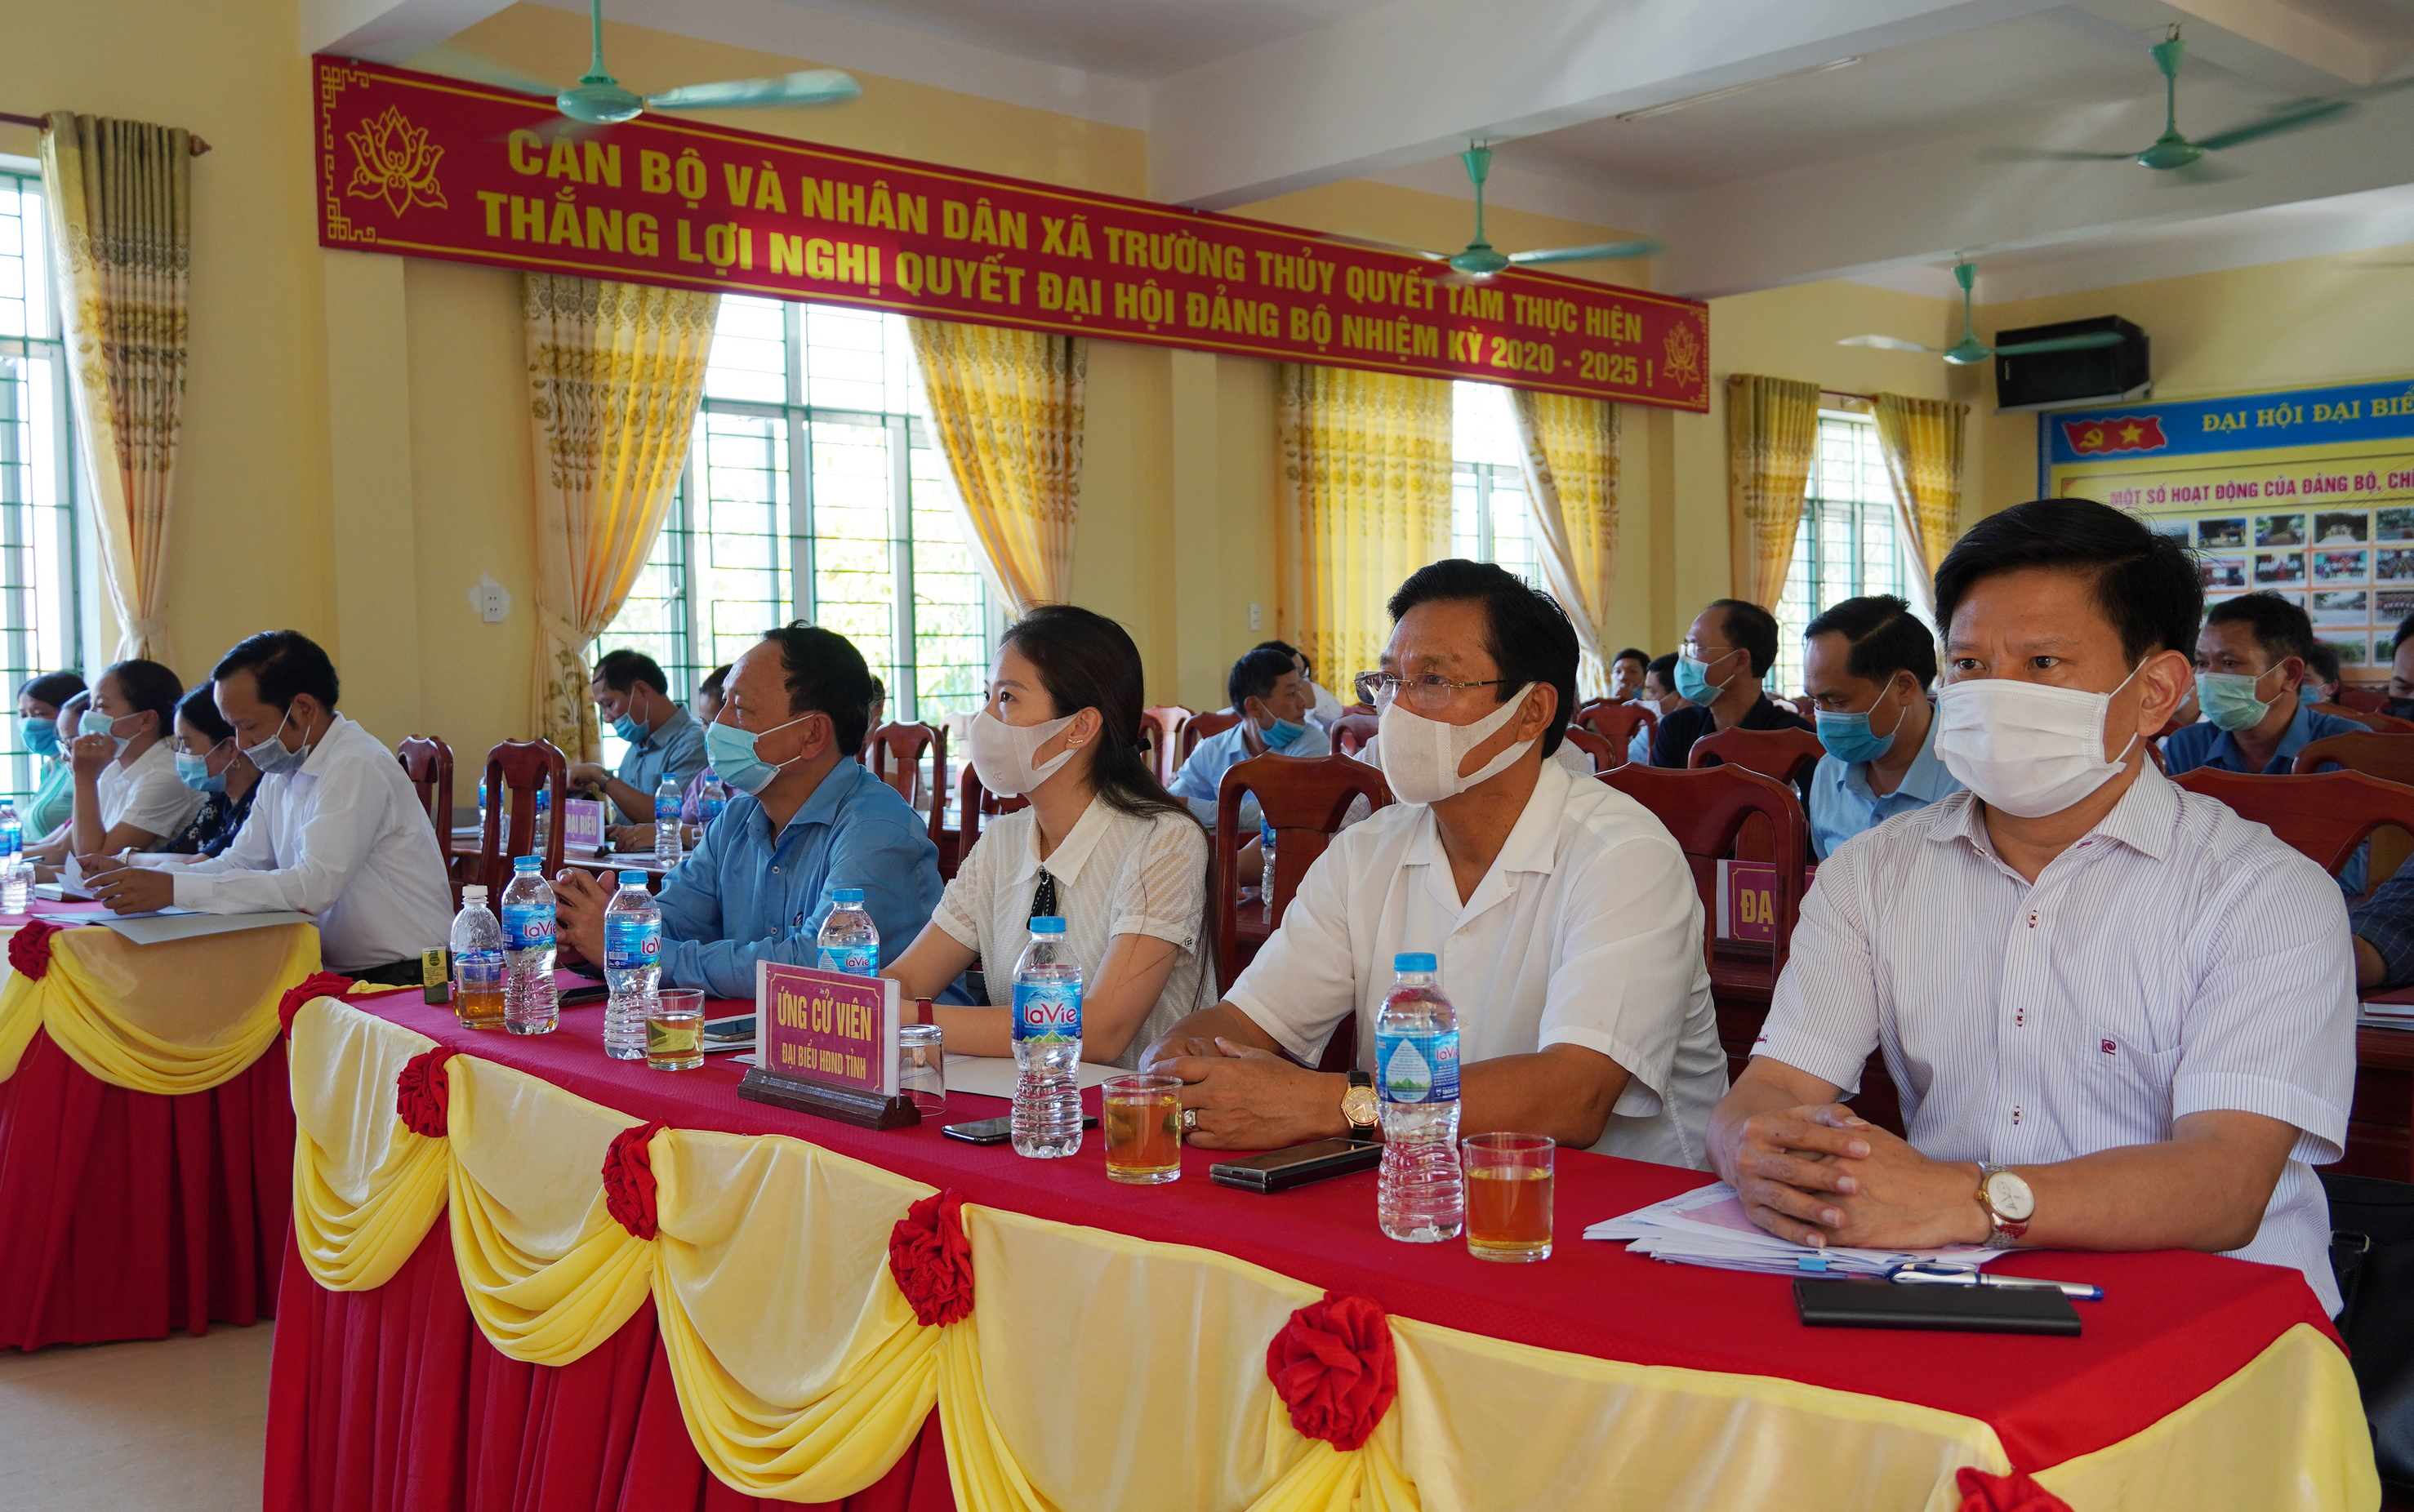  Các ứng cử viên đại biểu HĐND tỉnh nhiệm kỳ 2021-2026 tại đơn vị bầu cử số 13 tiếp xúc với cử tri huyện Lệ Thủy.